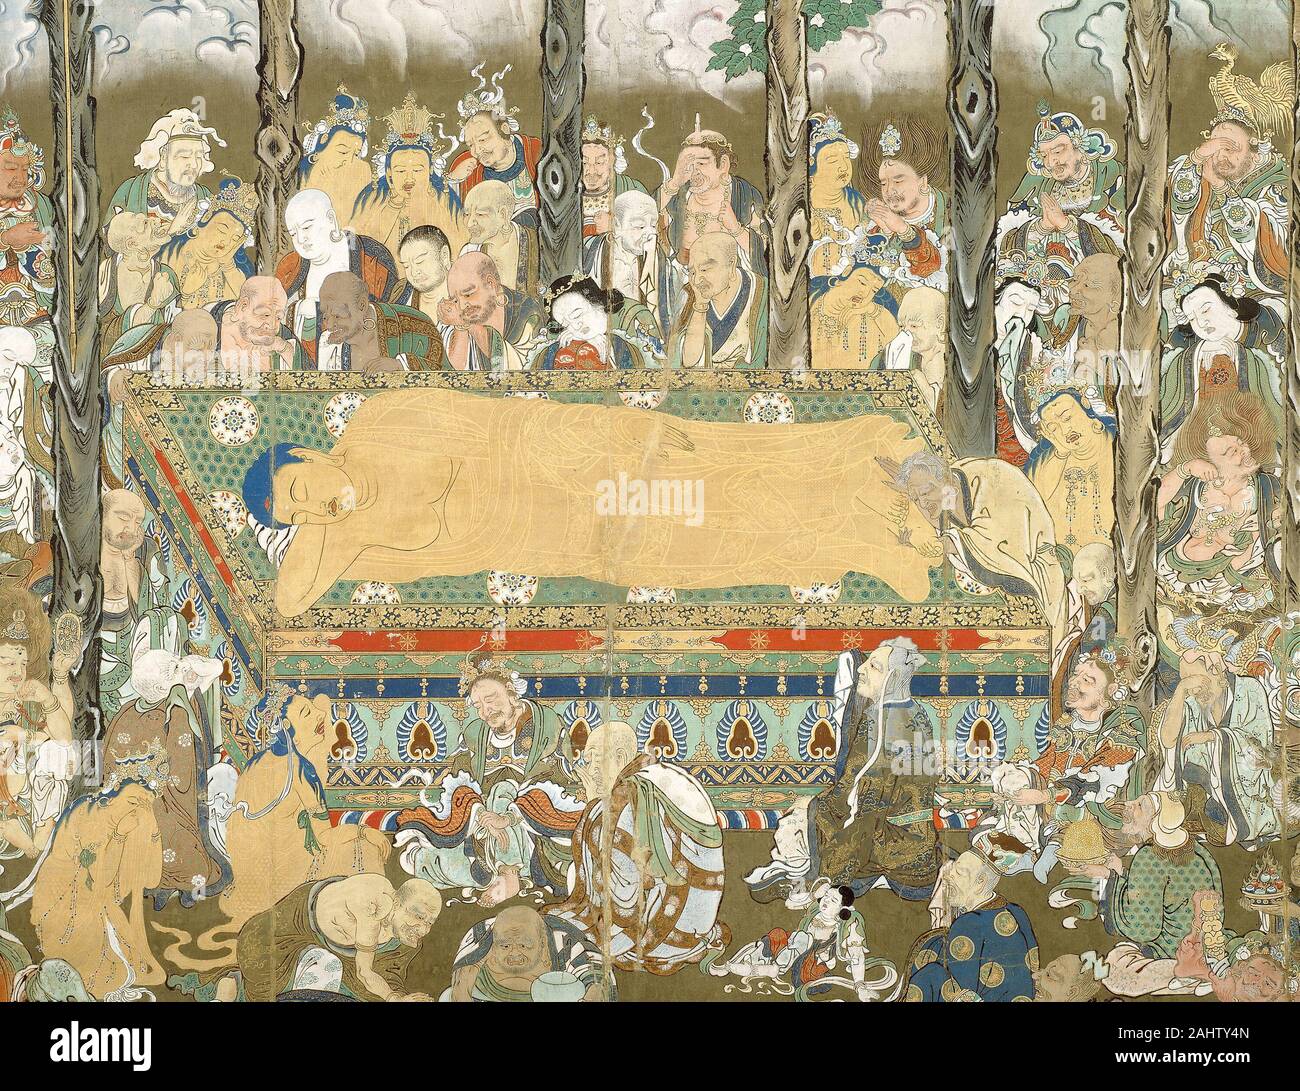 Nehan décès du Bouddha. De 1600 à 1700. Le Japon. Défilement pendaison ; encre, couleurs, et d'or sur soie Banque D'Images